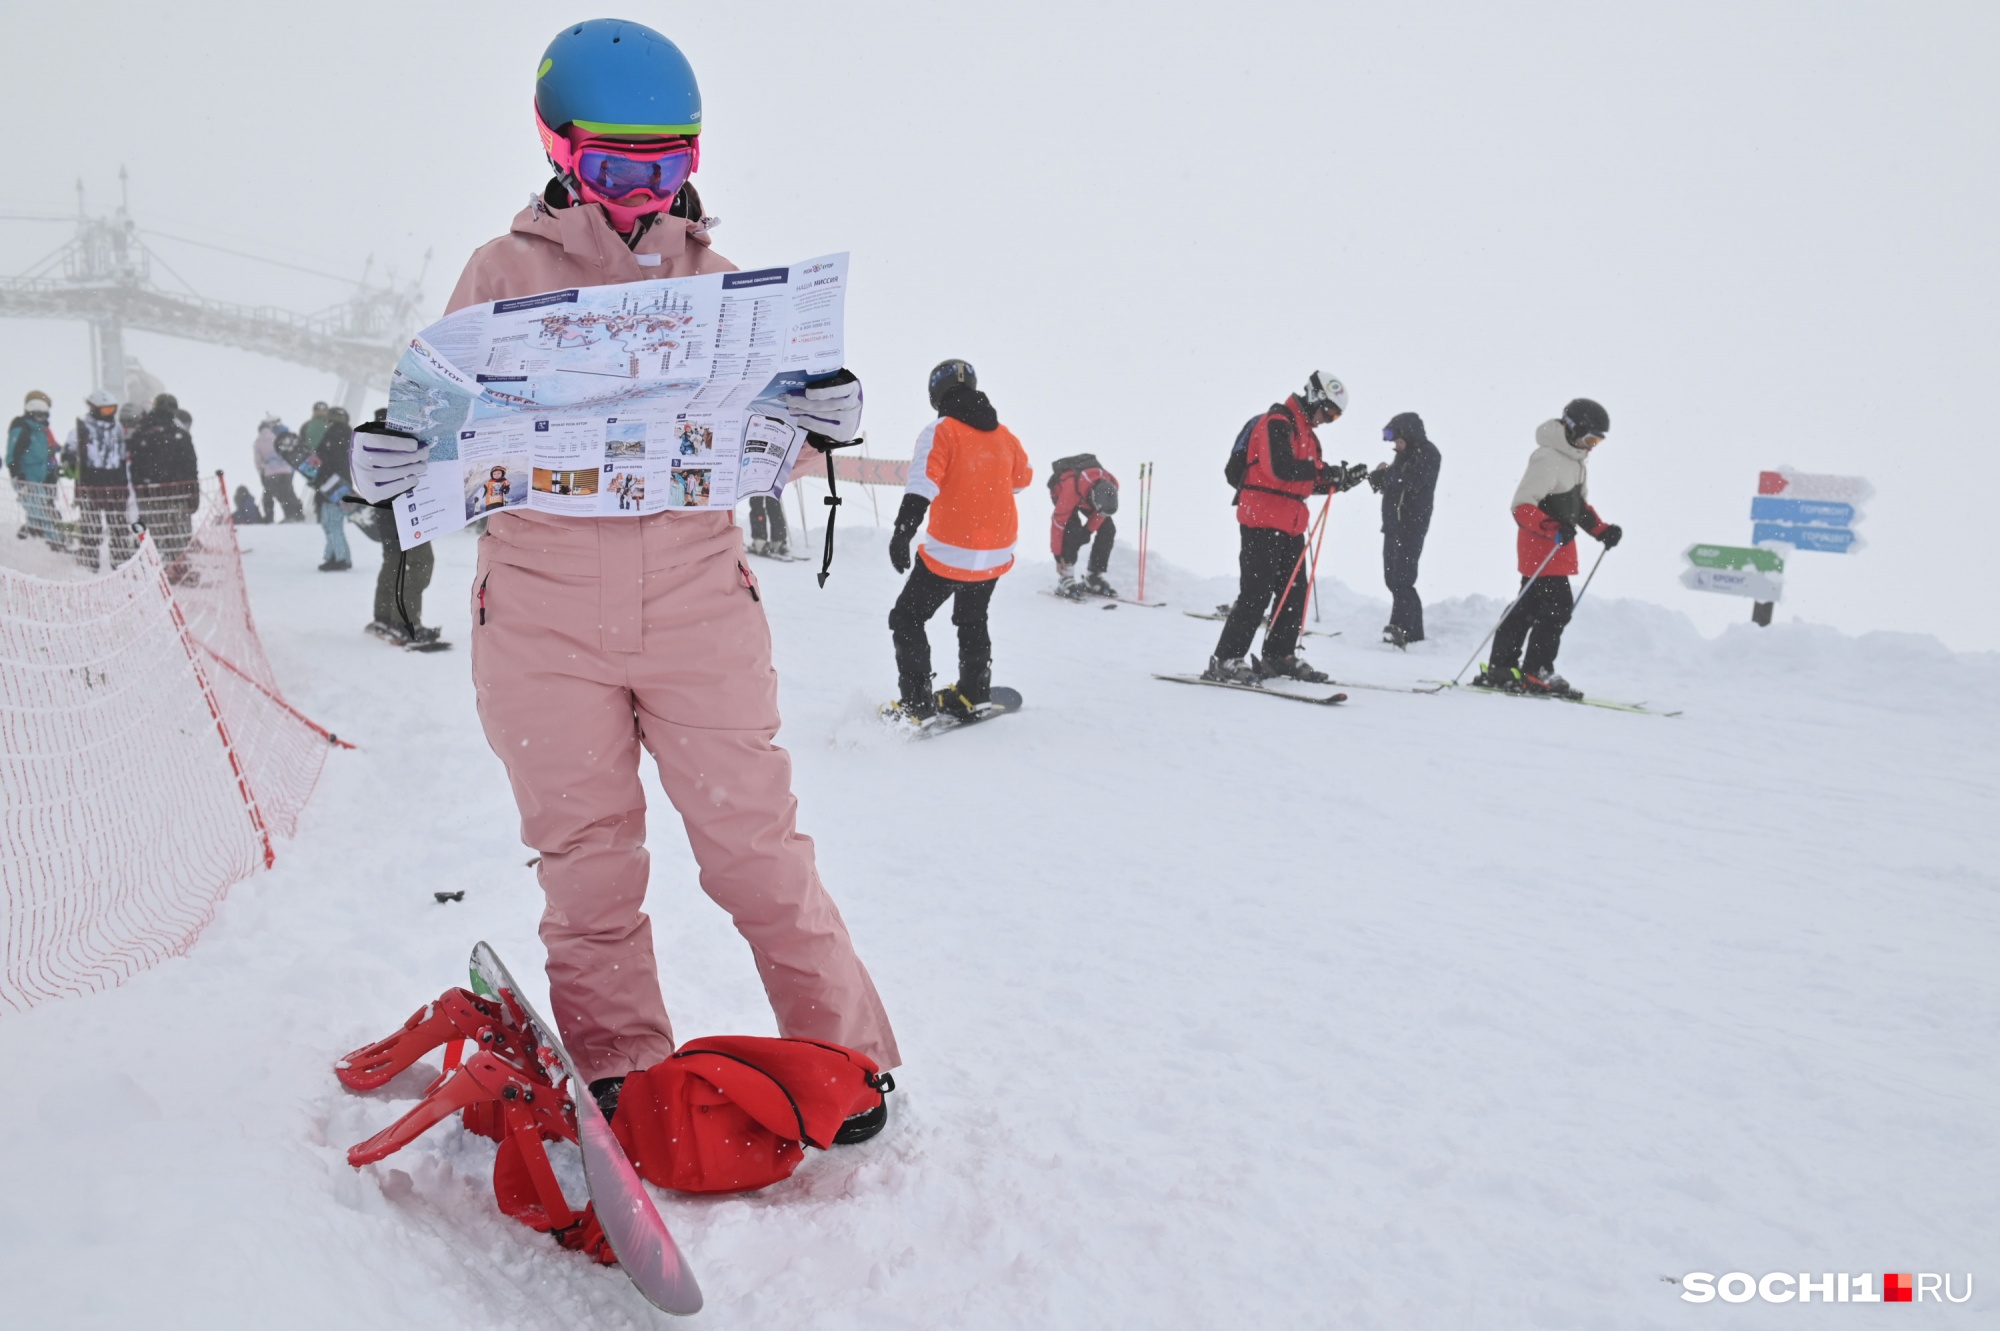 Лыжница изучает карту горнолыжного курорта